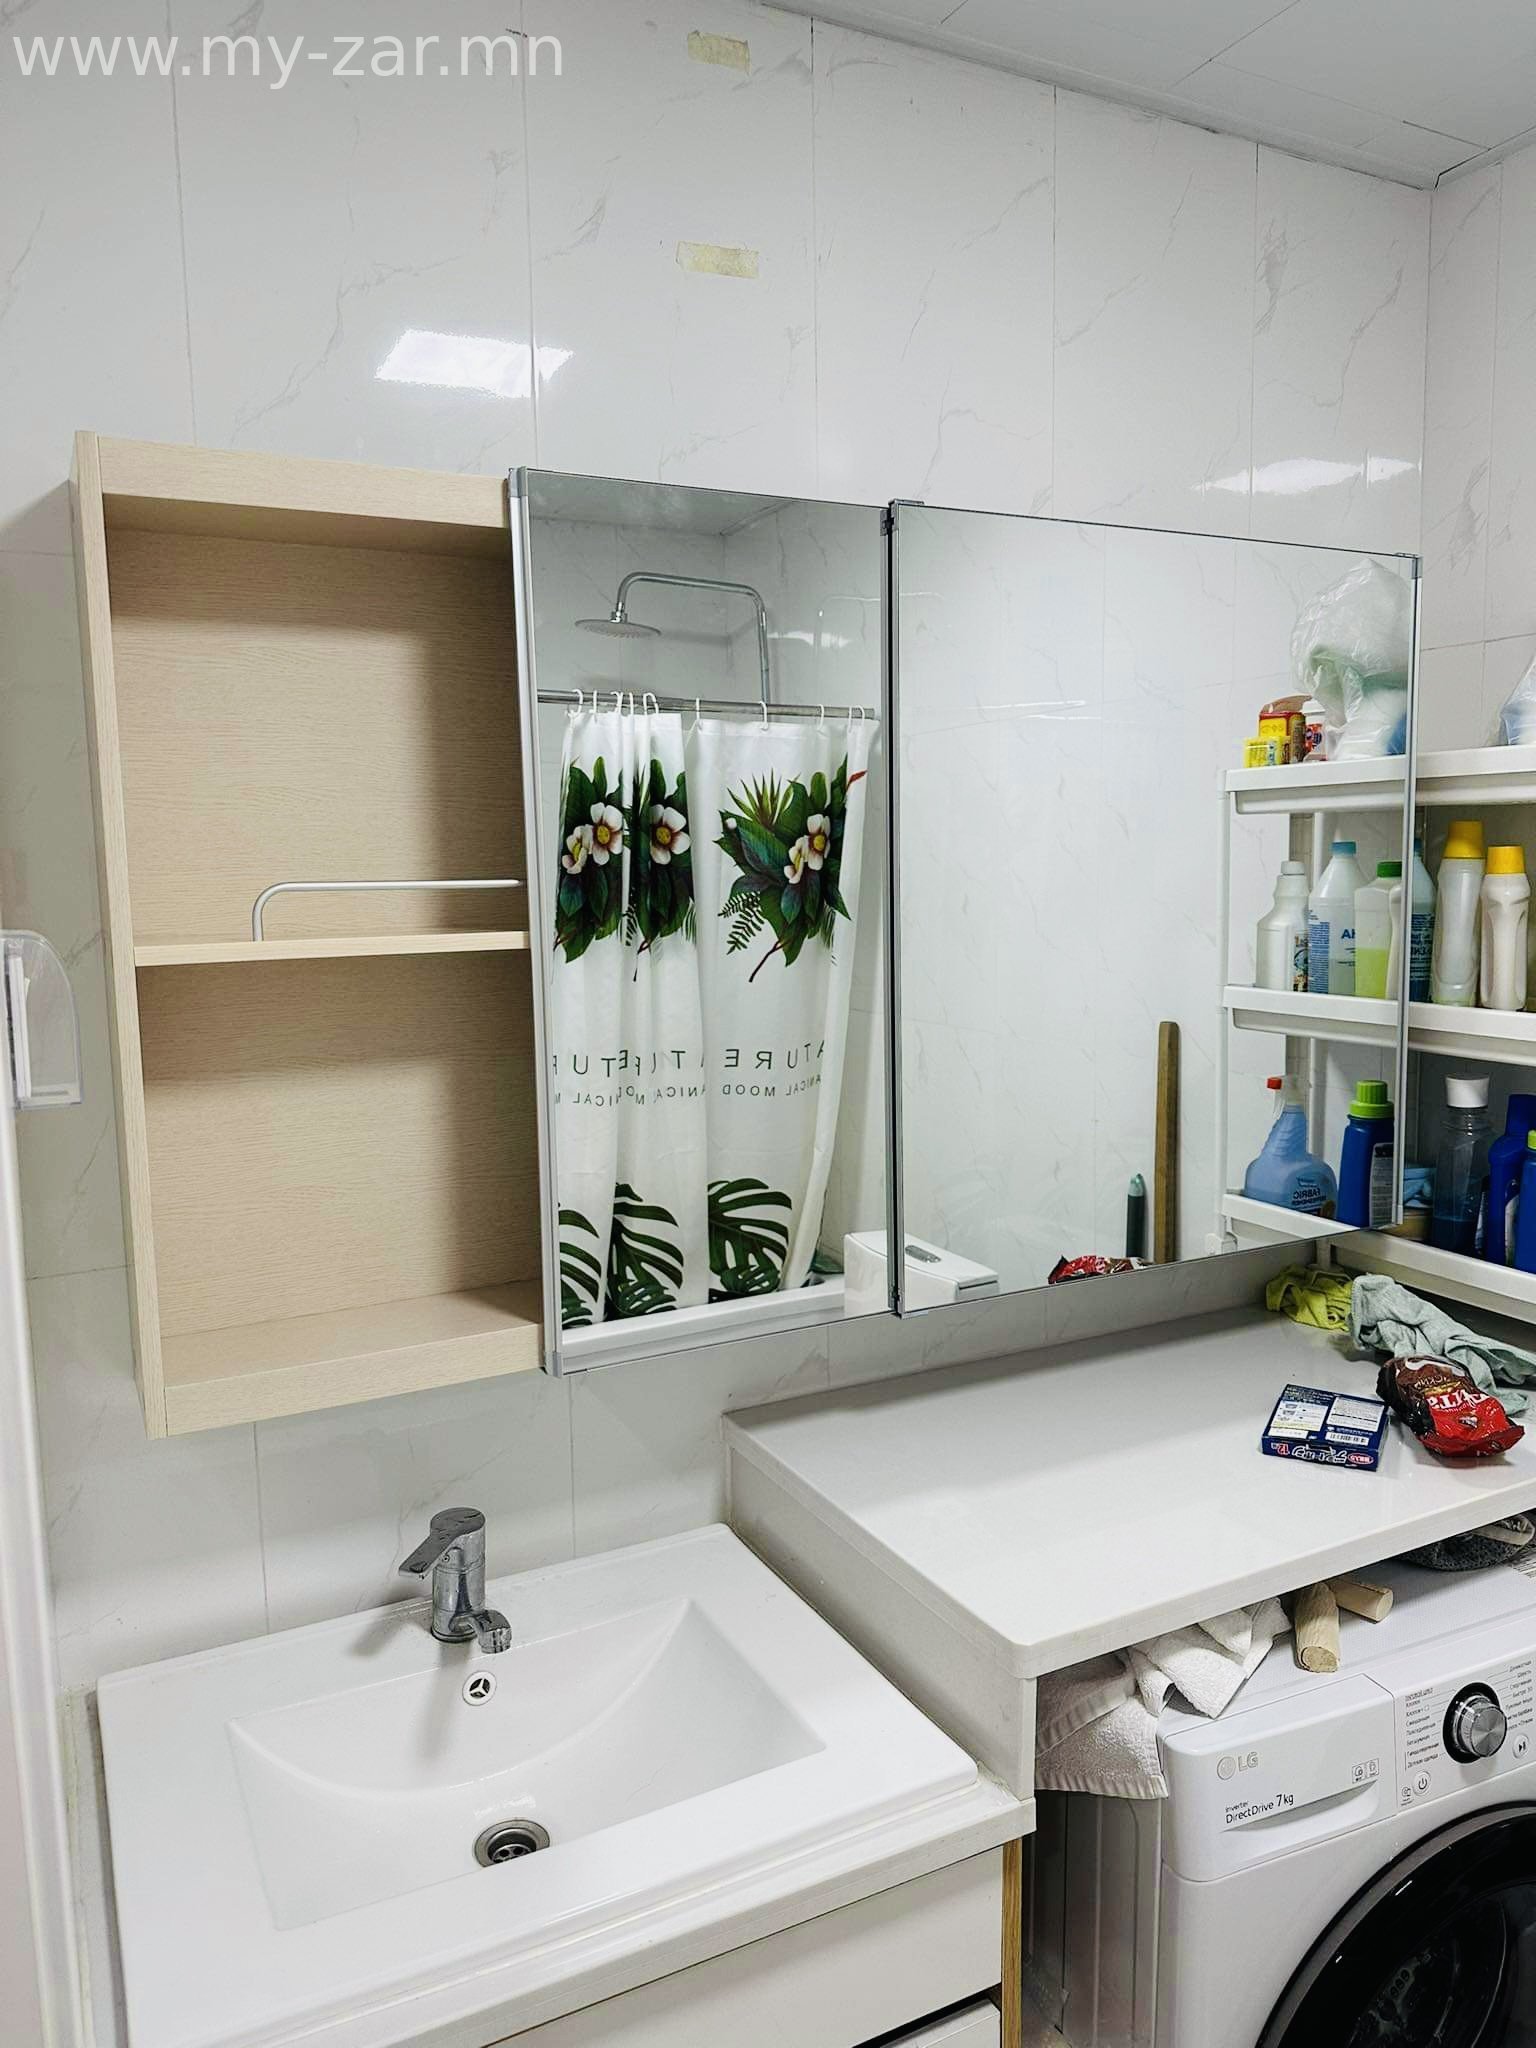 Угаалгын өрөөний гүйдэг тольтой ханын тавиур нь Солонгос улсын угаалгын өрөөнд зориулсан тусгай PS 